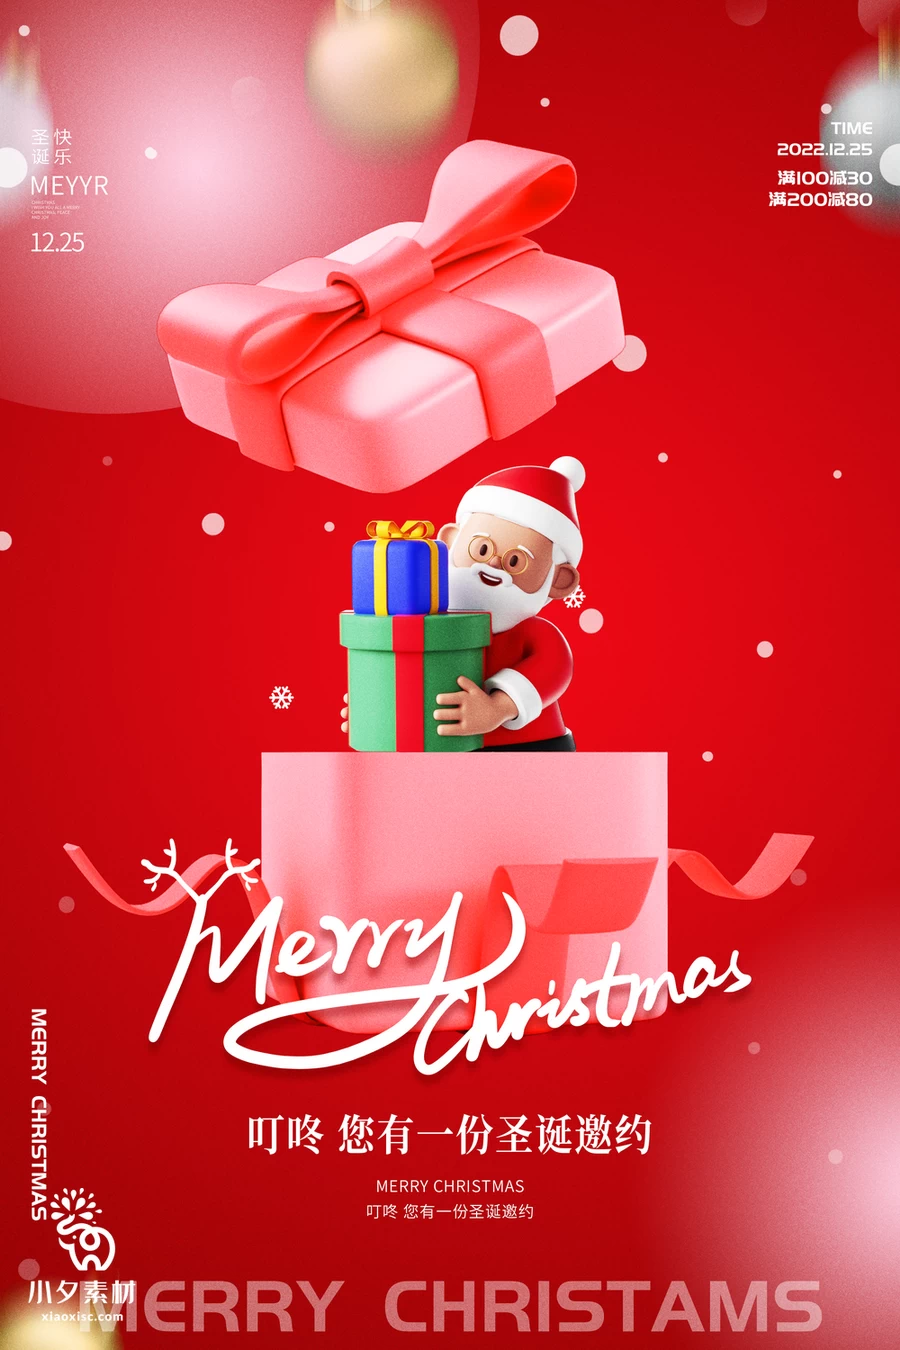 圣诞节节日节庆海报模板PSD分层设计素材【013】